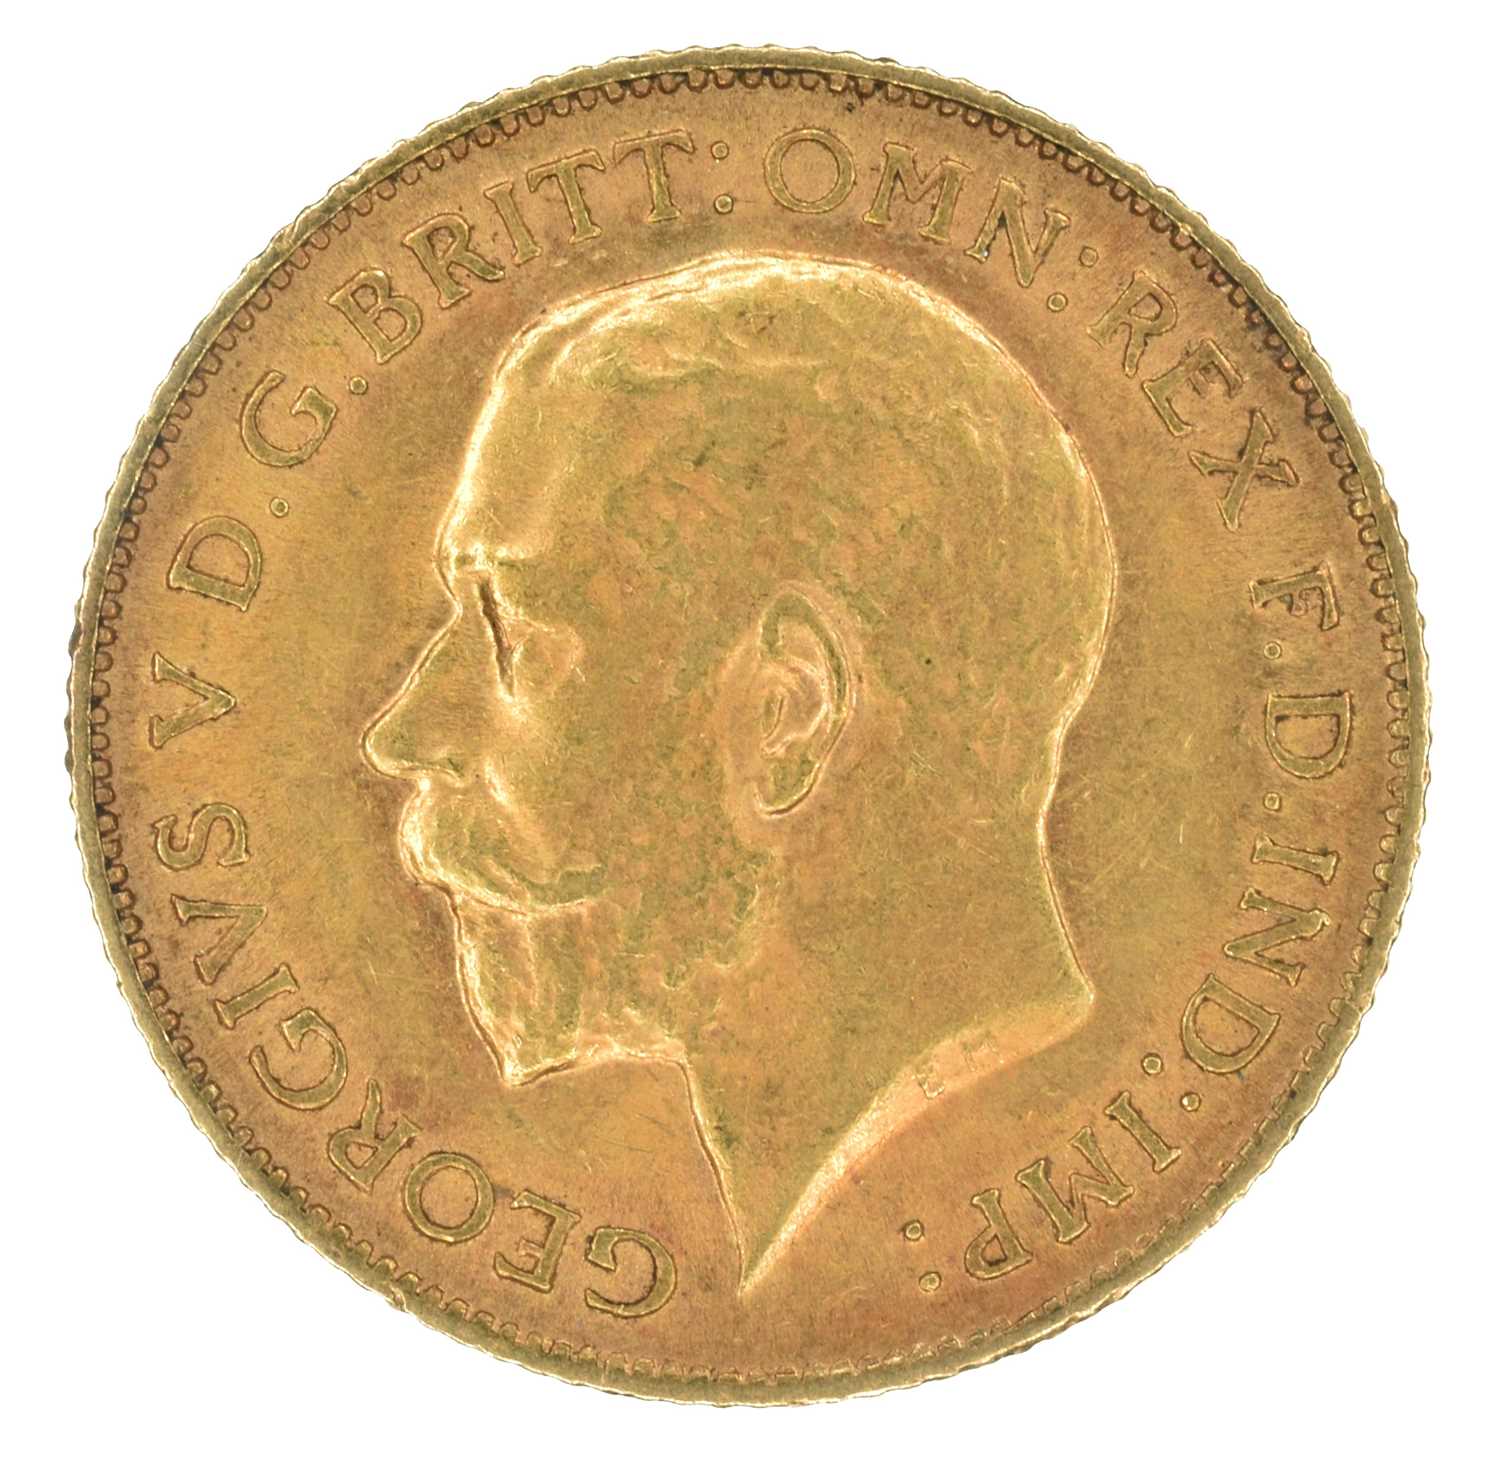 King George V, Half-Sovereign, 1912.